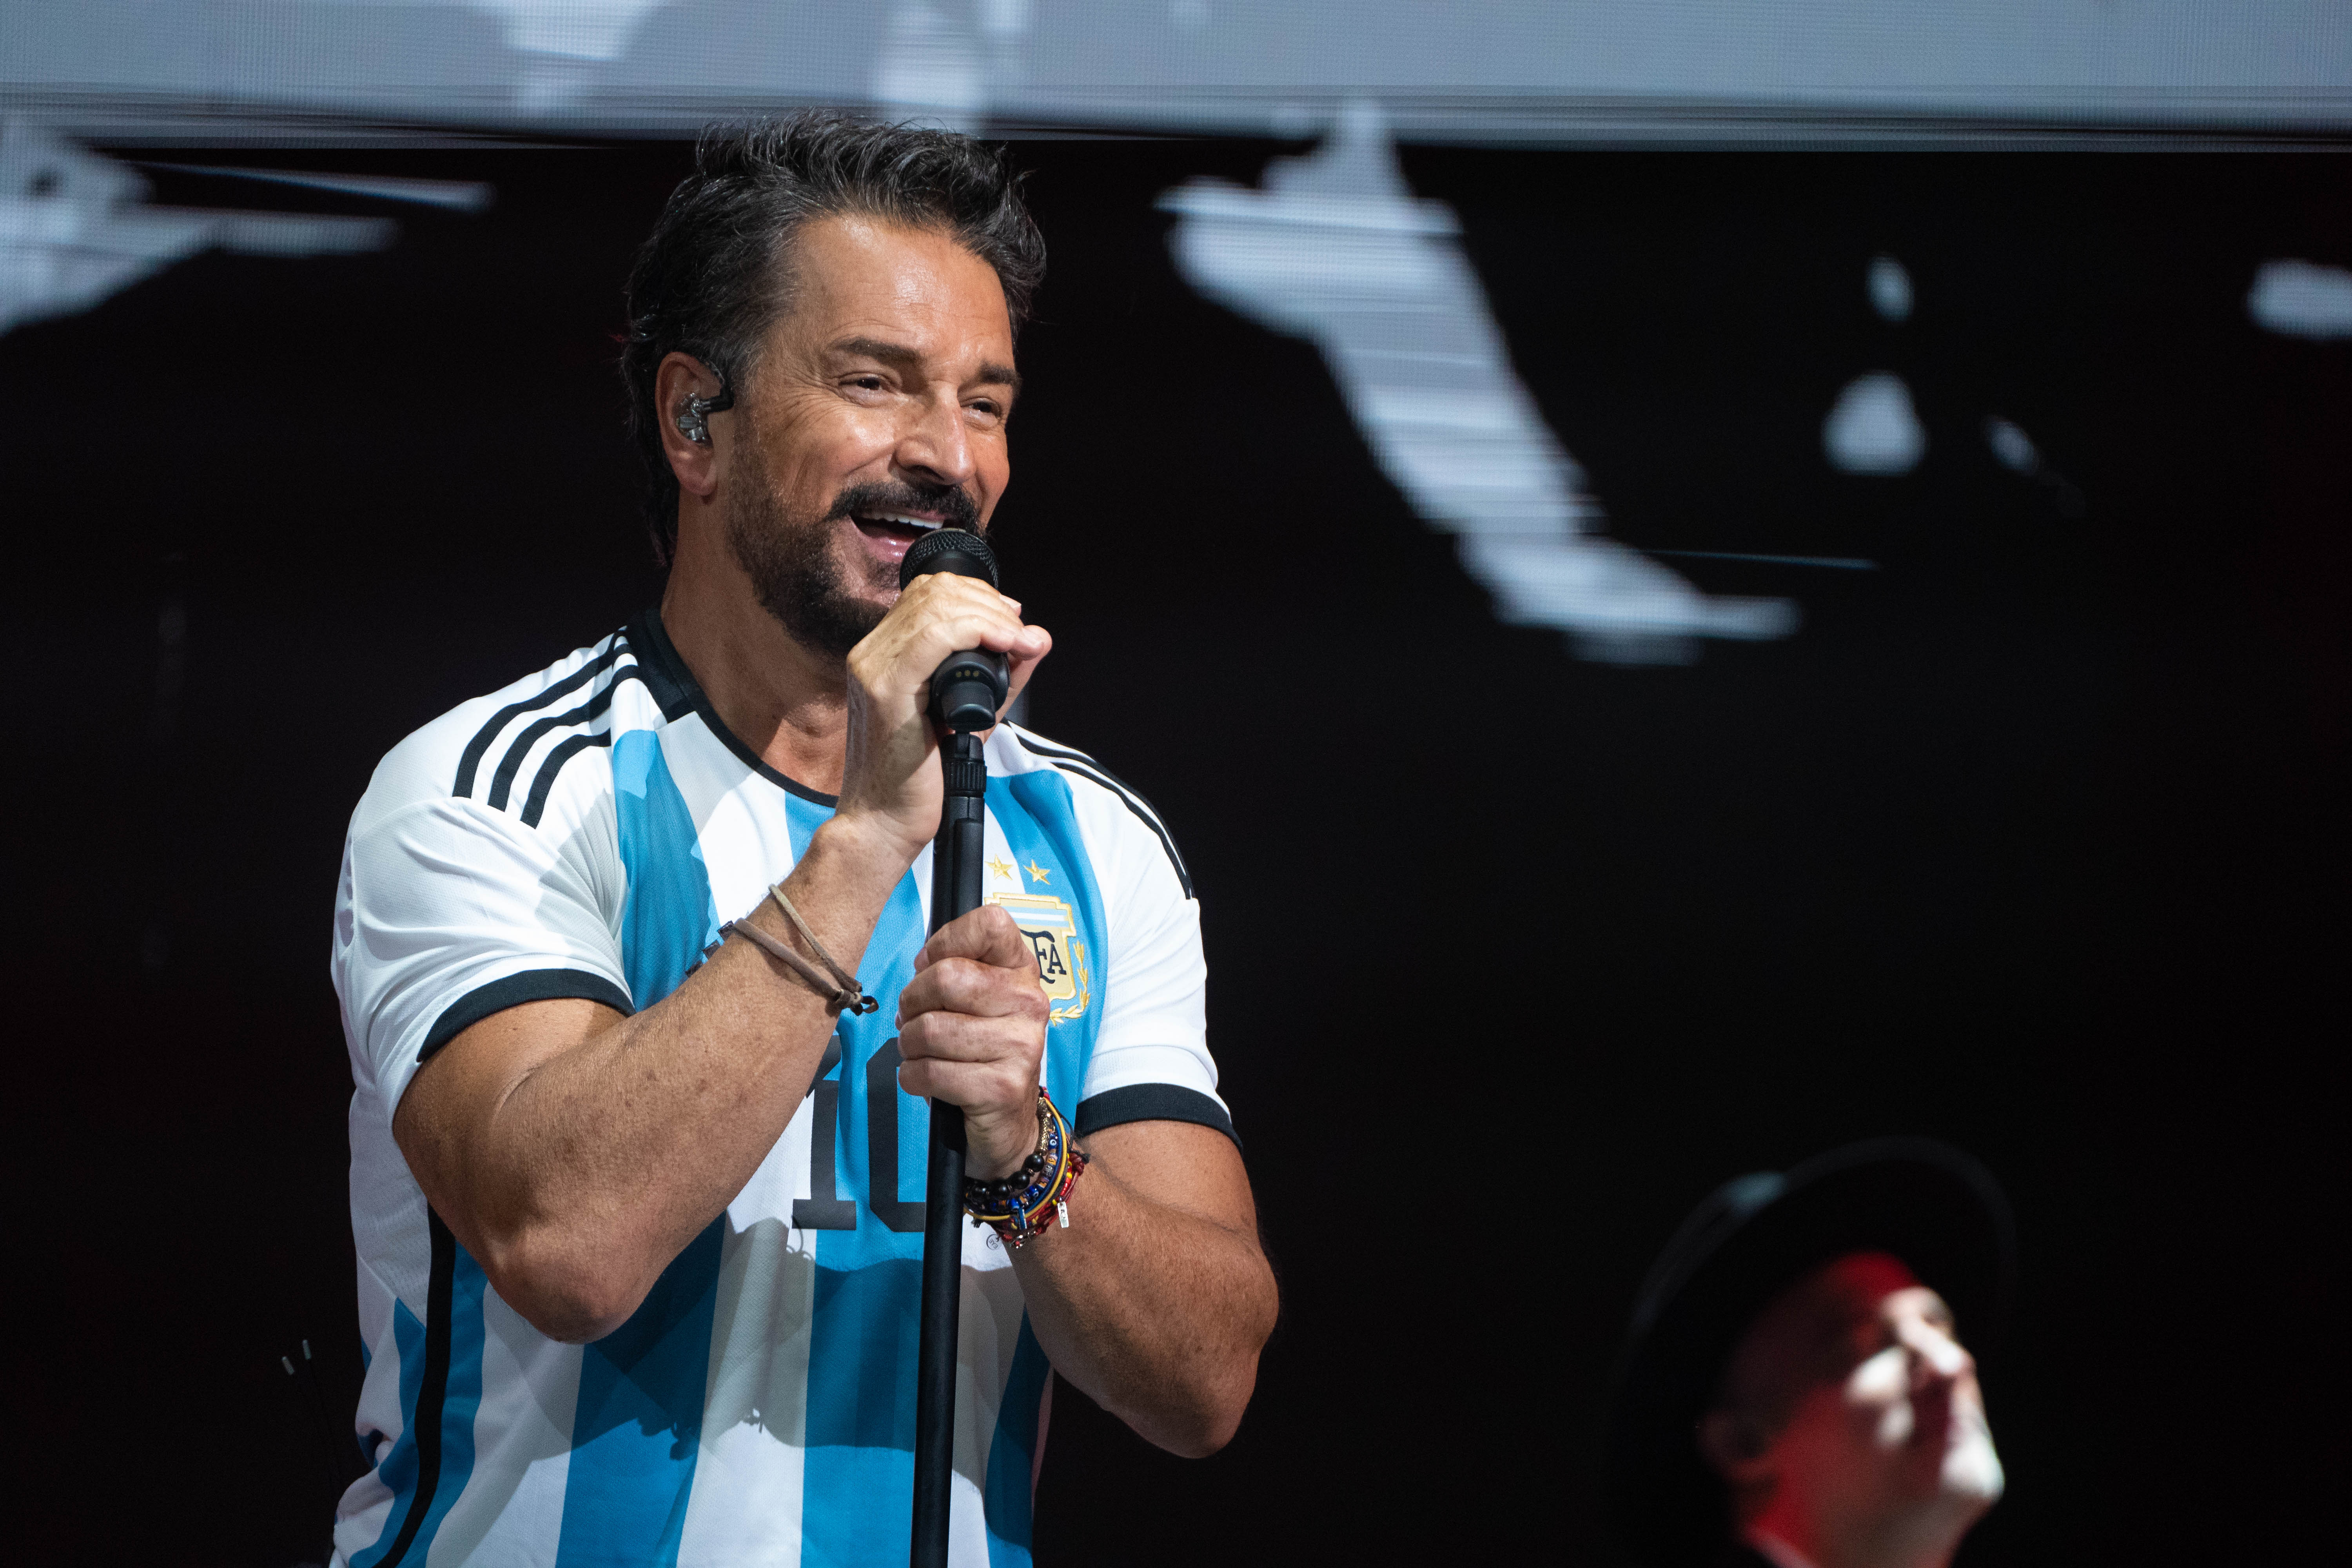 Ricardo Arjona cerró su primer show en el Movistar Arena vistiendo la camiseta 10 de la selección argentina (Fotos: Franco Fafasuli)